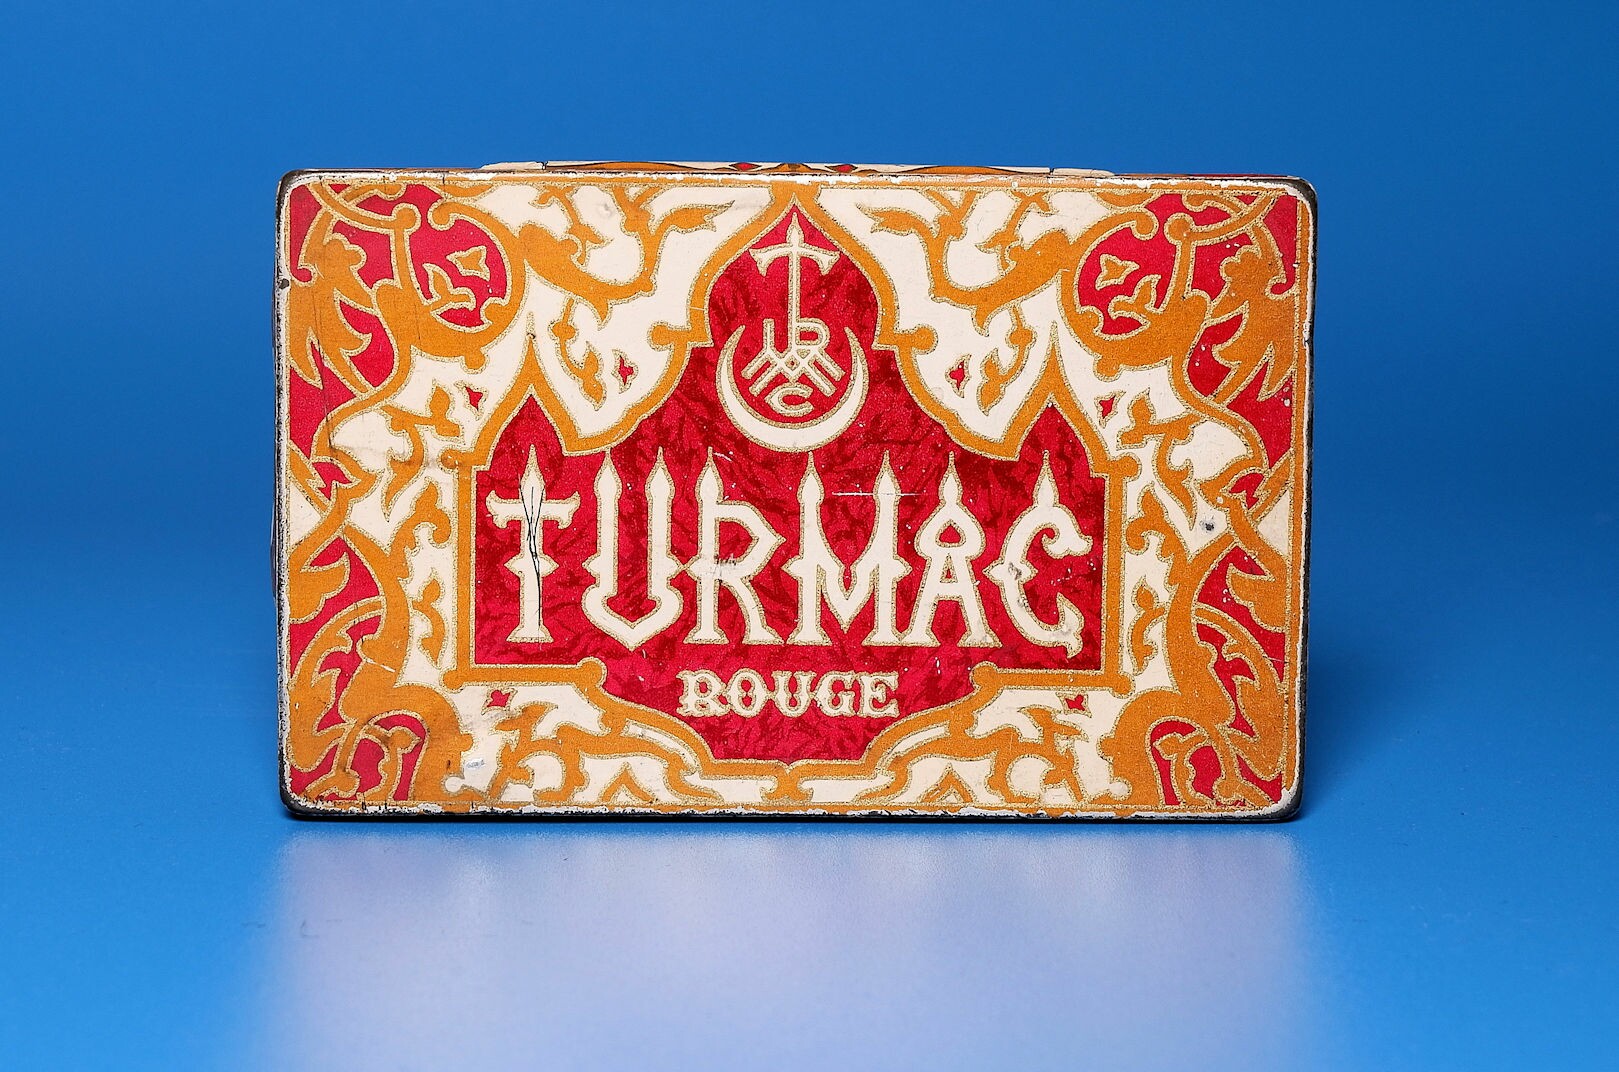 Zigarettenmarke	"Turmac Rouge"	25 Stück Blechpackung (Volkskunde- und Freilichtmuseum Roscheider Hof CC0)